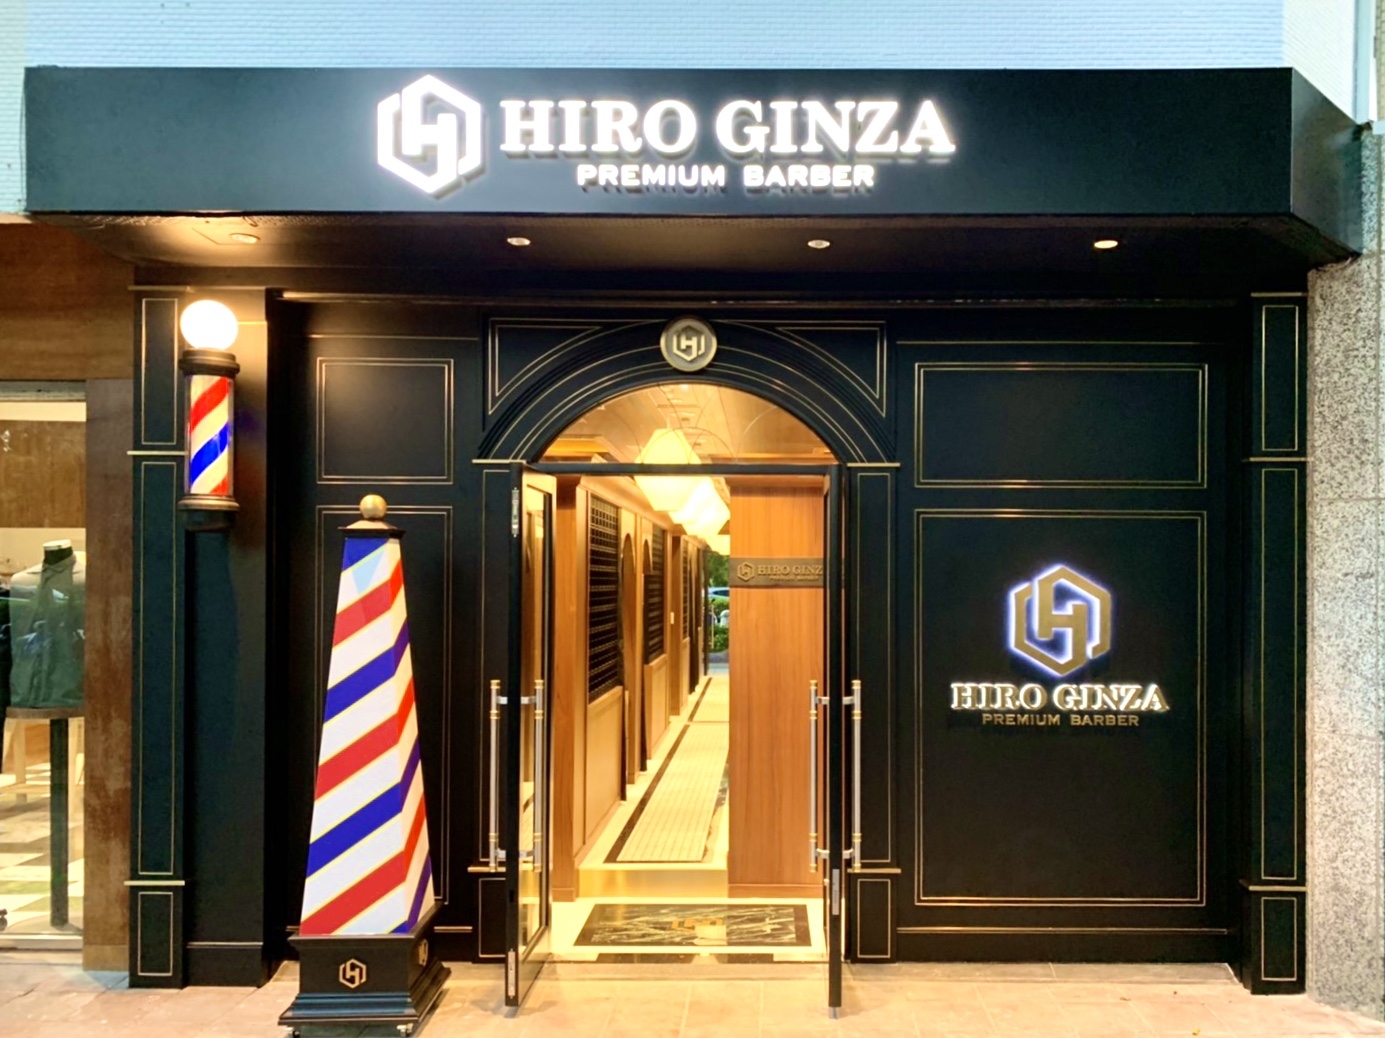 日本の高級理容室 ヒロ銀座 海外2店舗目となる 台湾店 出店 株式会社hiro Ginzaのプレスリリース